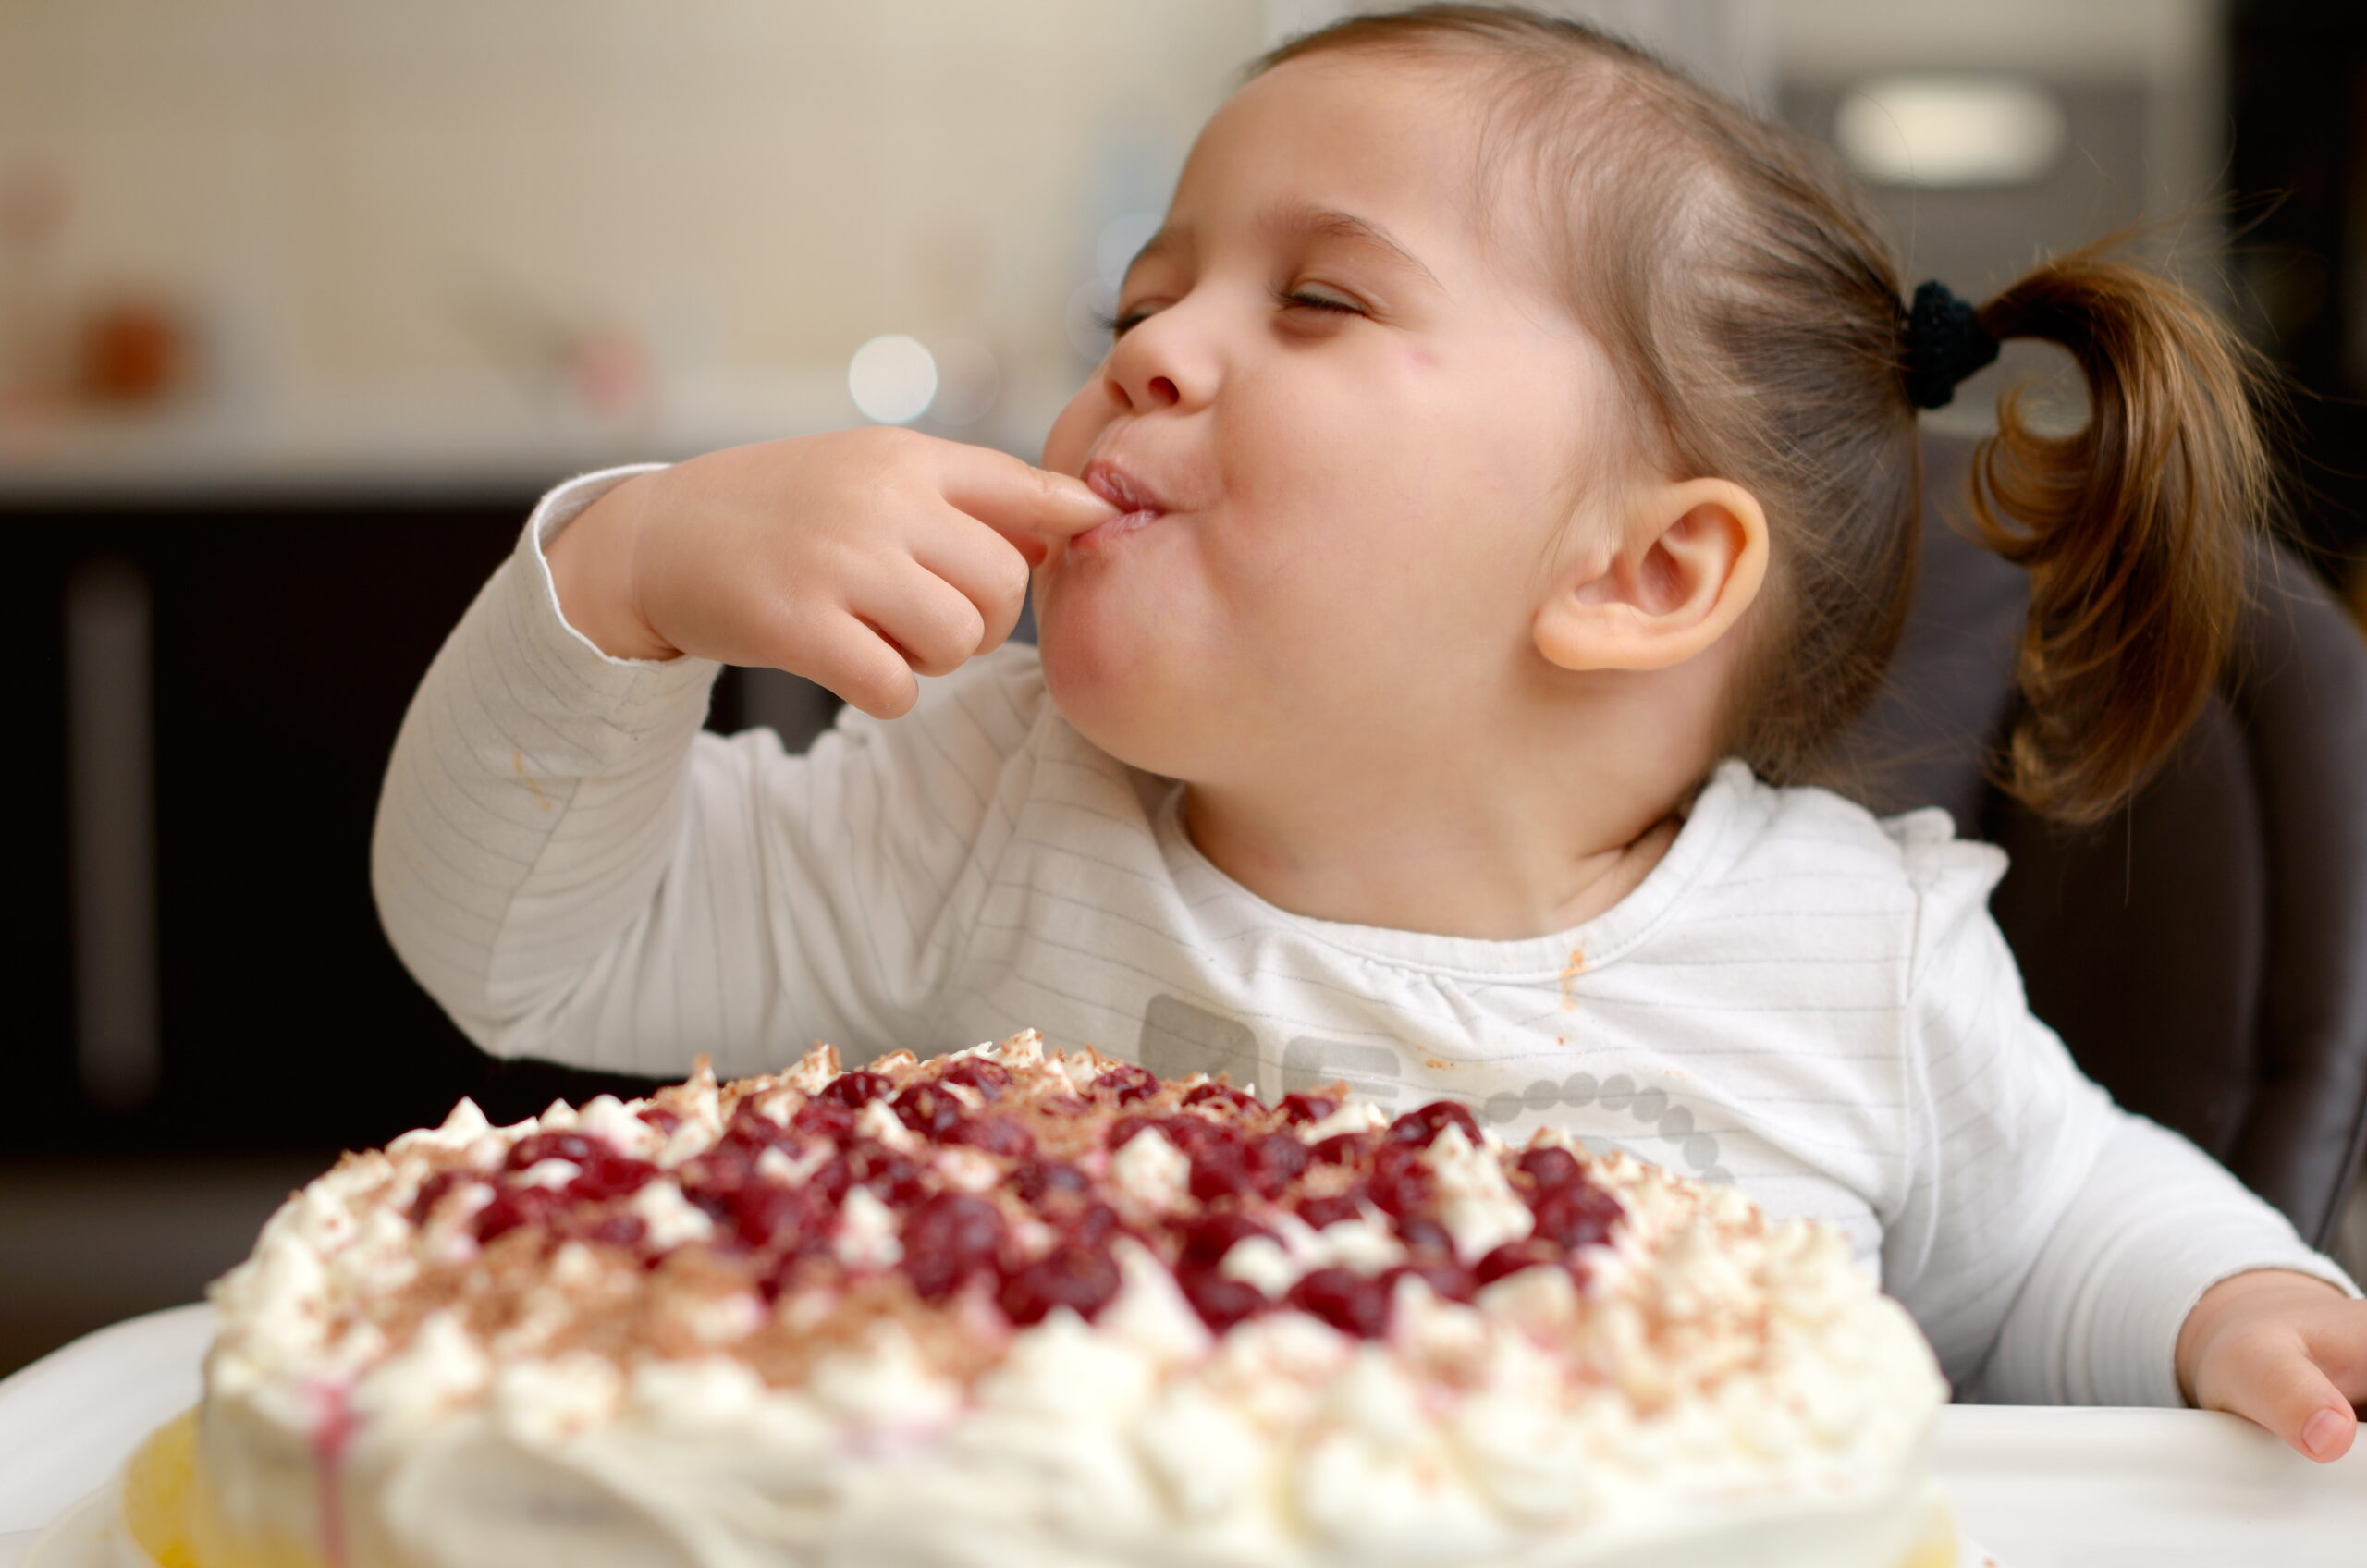 吃蛋糕的女孩 库存图片. 图片 包括有 幸福, 兴奋, 快乐, 点心, 饥饿, 逗人喜爱, 小圆面包, 女孩 - 35665239